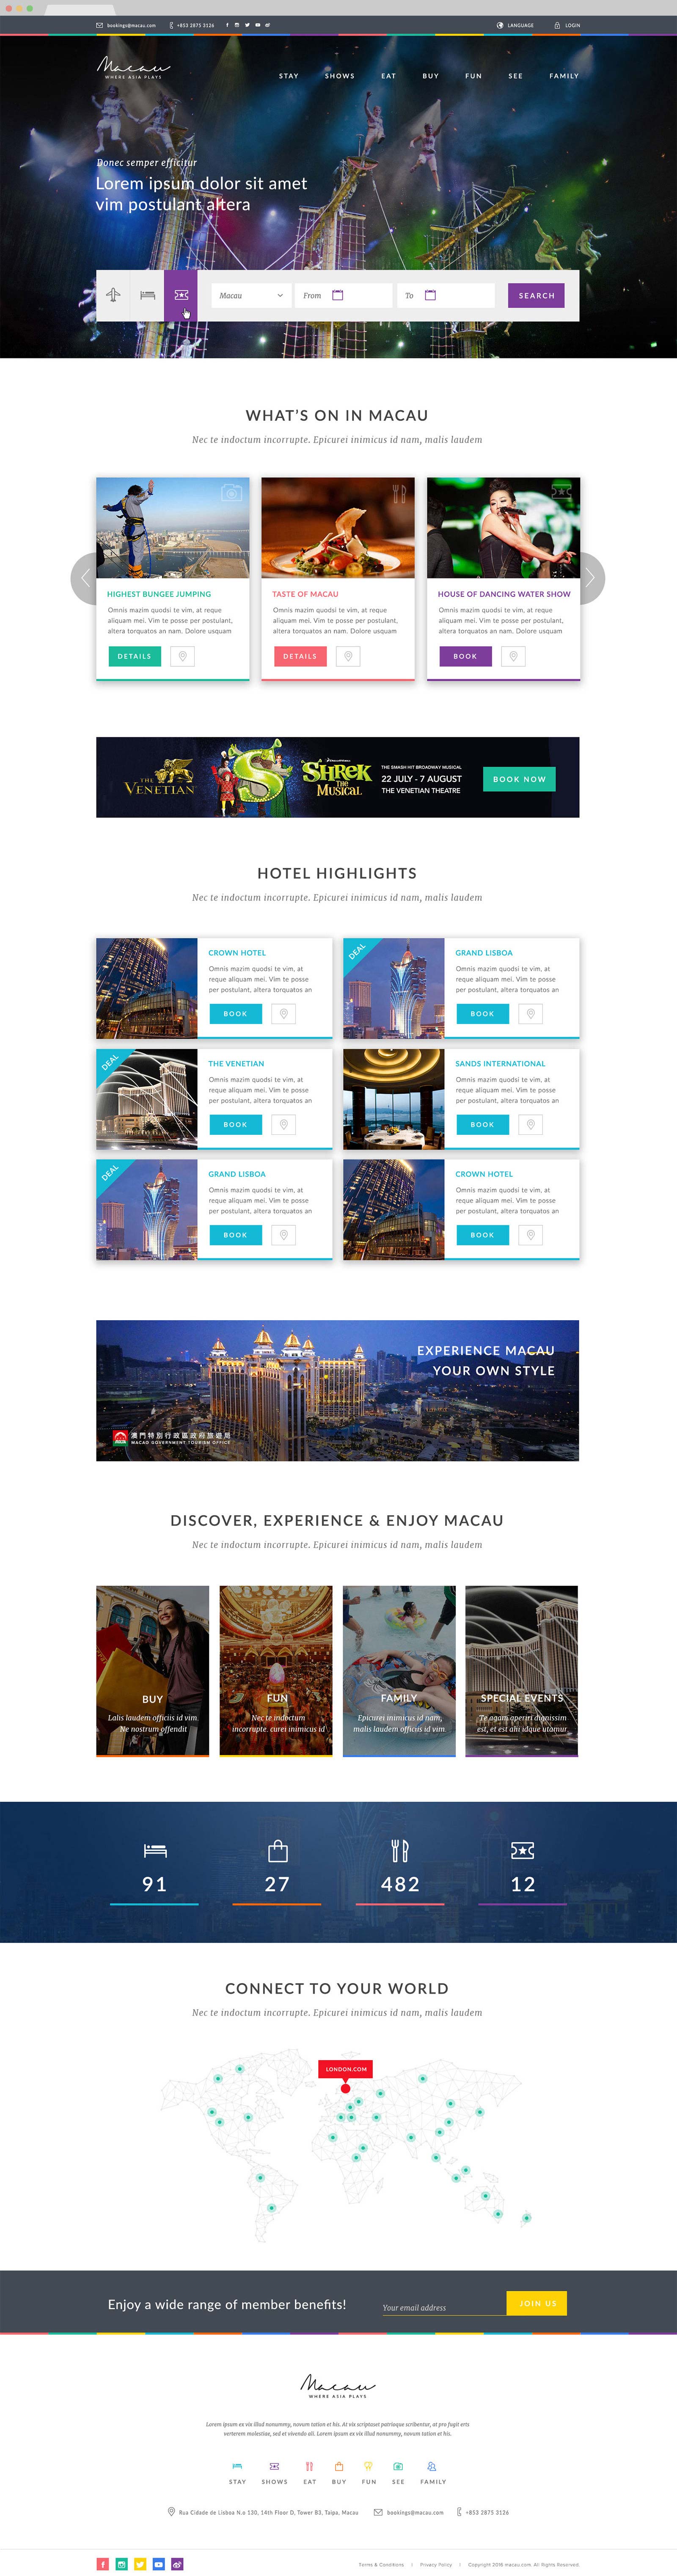 web design singapore macau.com 00 - Macau.com